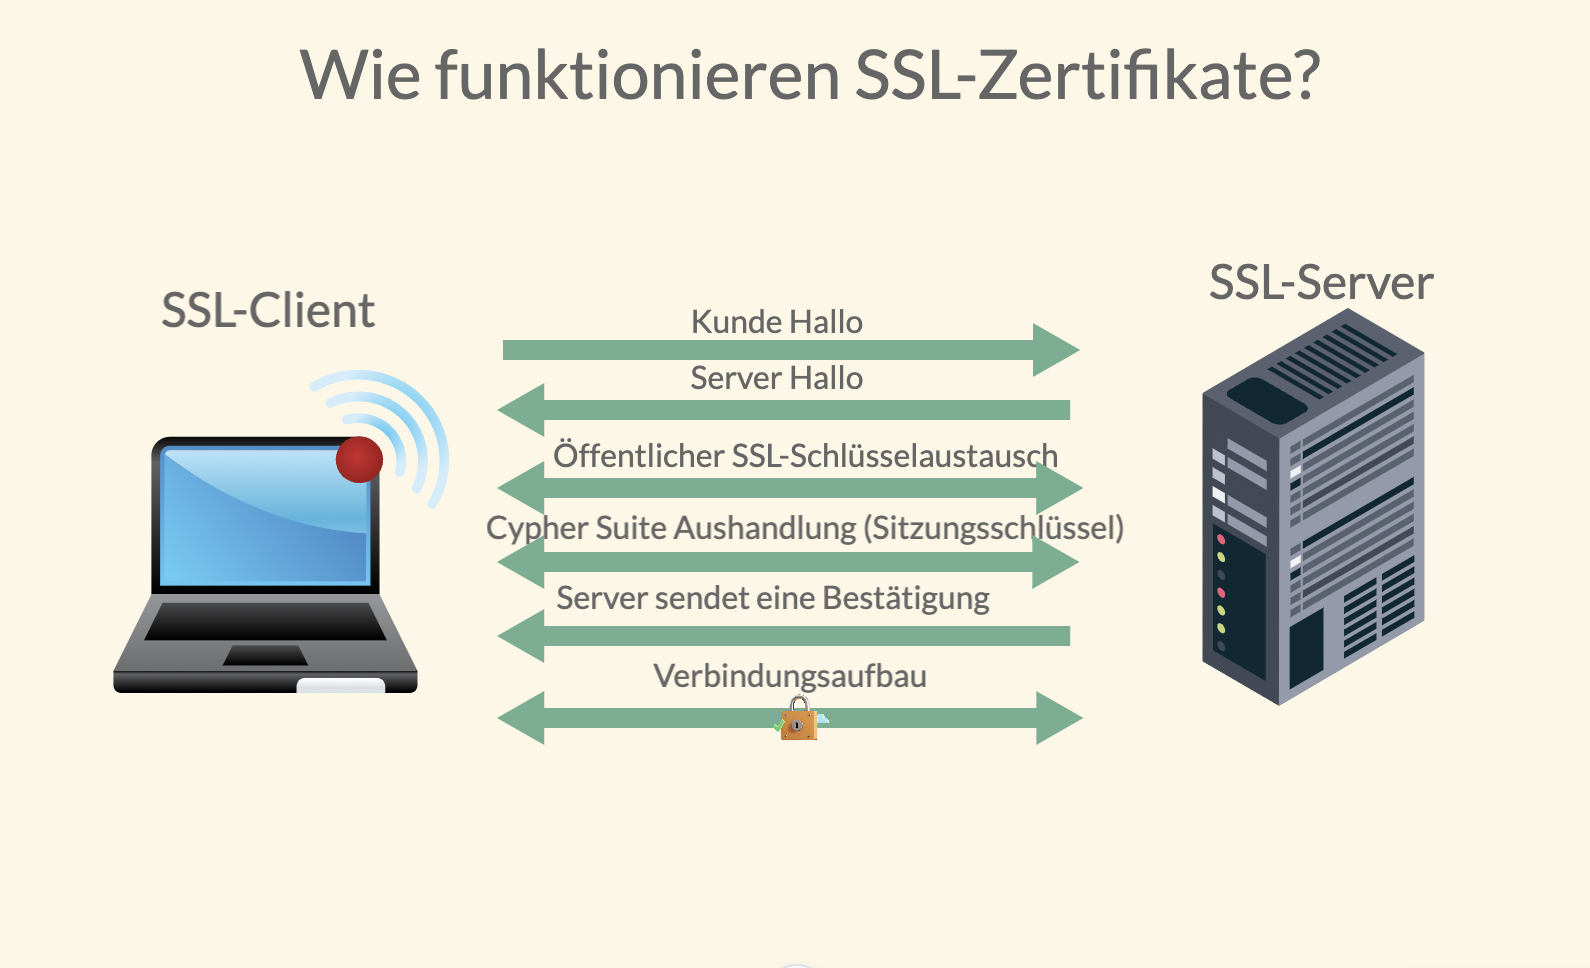 Was ist ein SSL-Zertifikat-Cache? Der SSL-Zertifikat-Cache ist eine temporäre Speicherung von SSL-Zertifikaten in Webbrowsern, um die Geschwindigkeit des Verbindungsaufbaus zu SSL-geschützten Websites zu verbessern.
Wie funktioniert der SSL-Zertifikat-Cache?